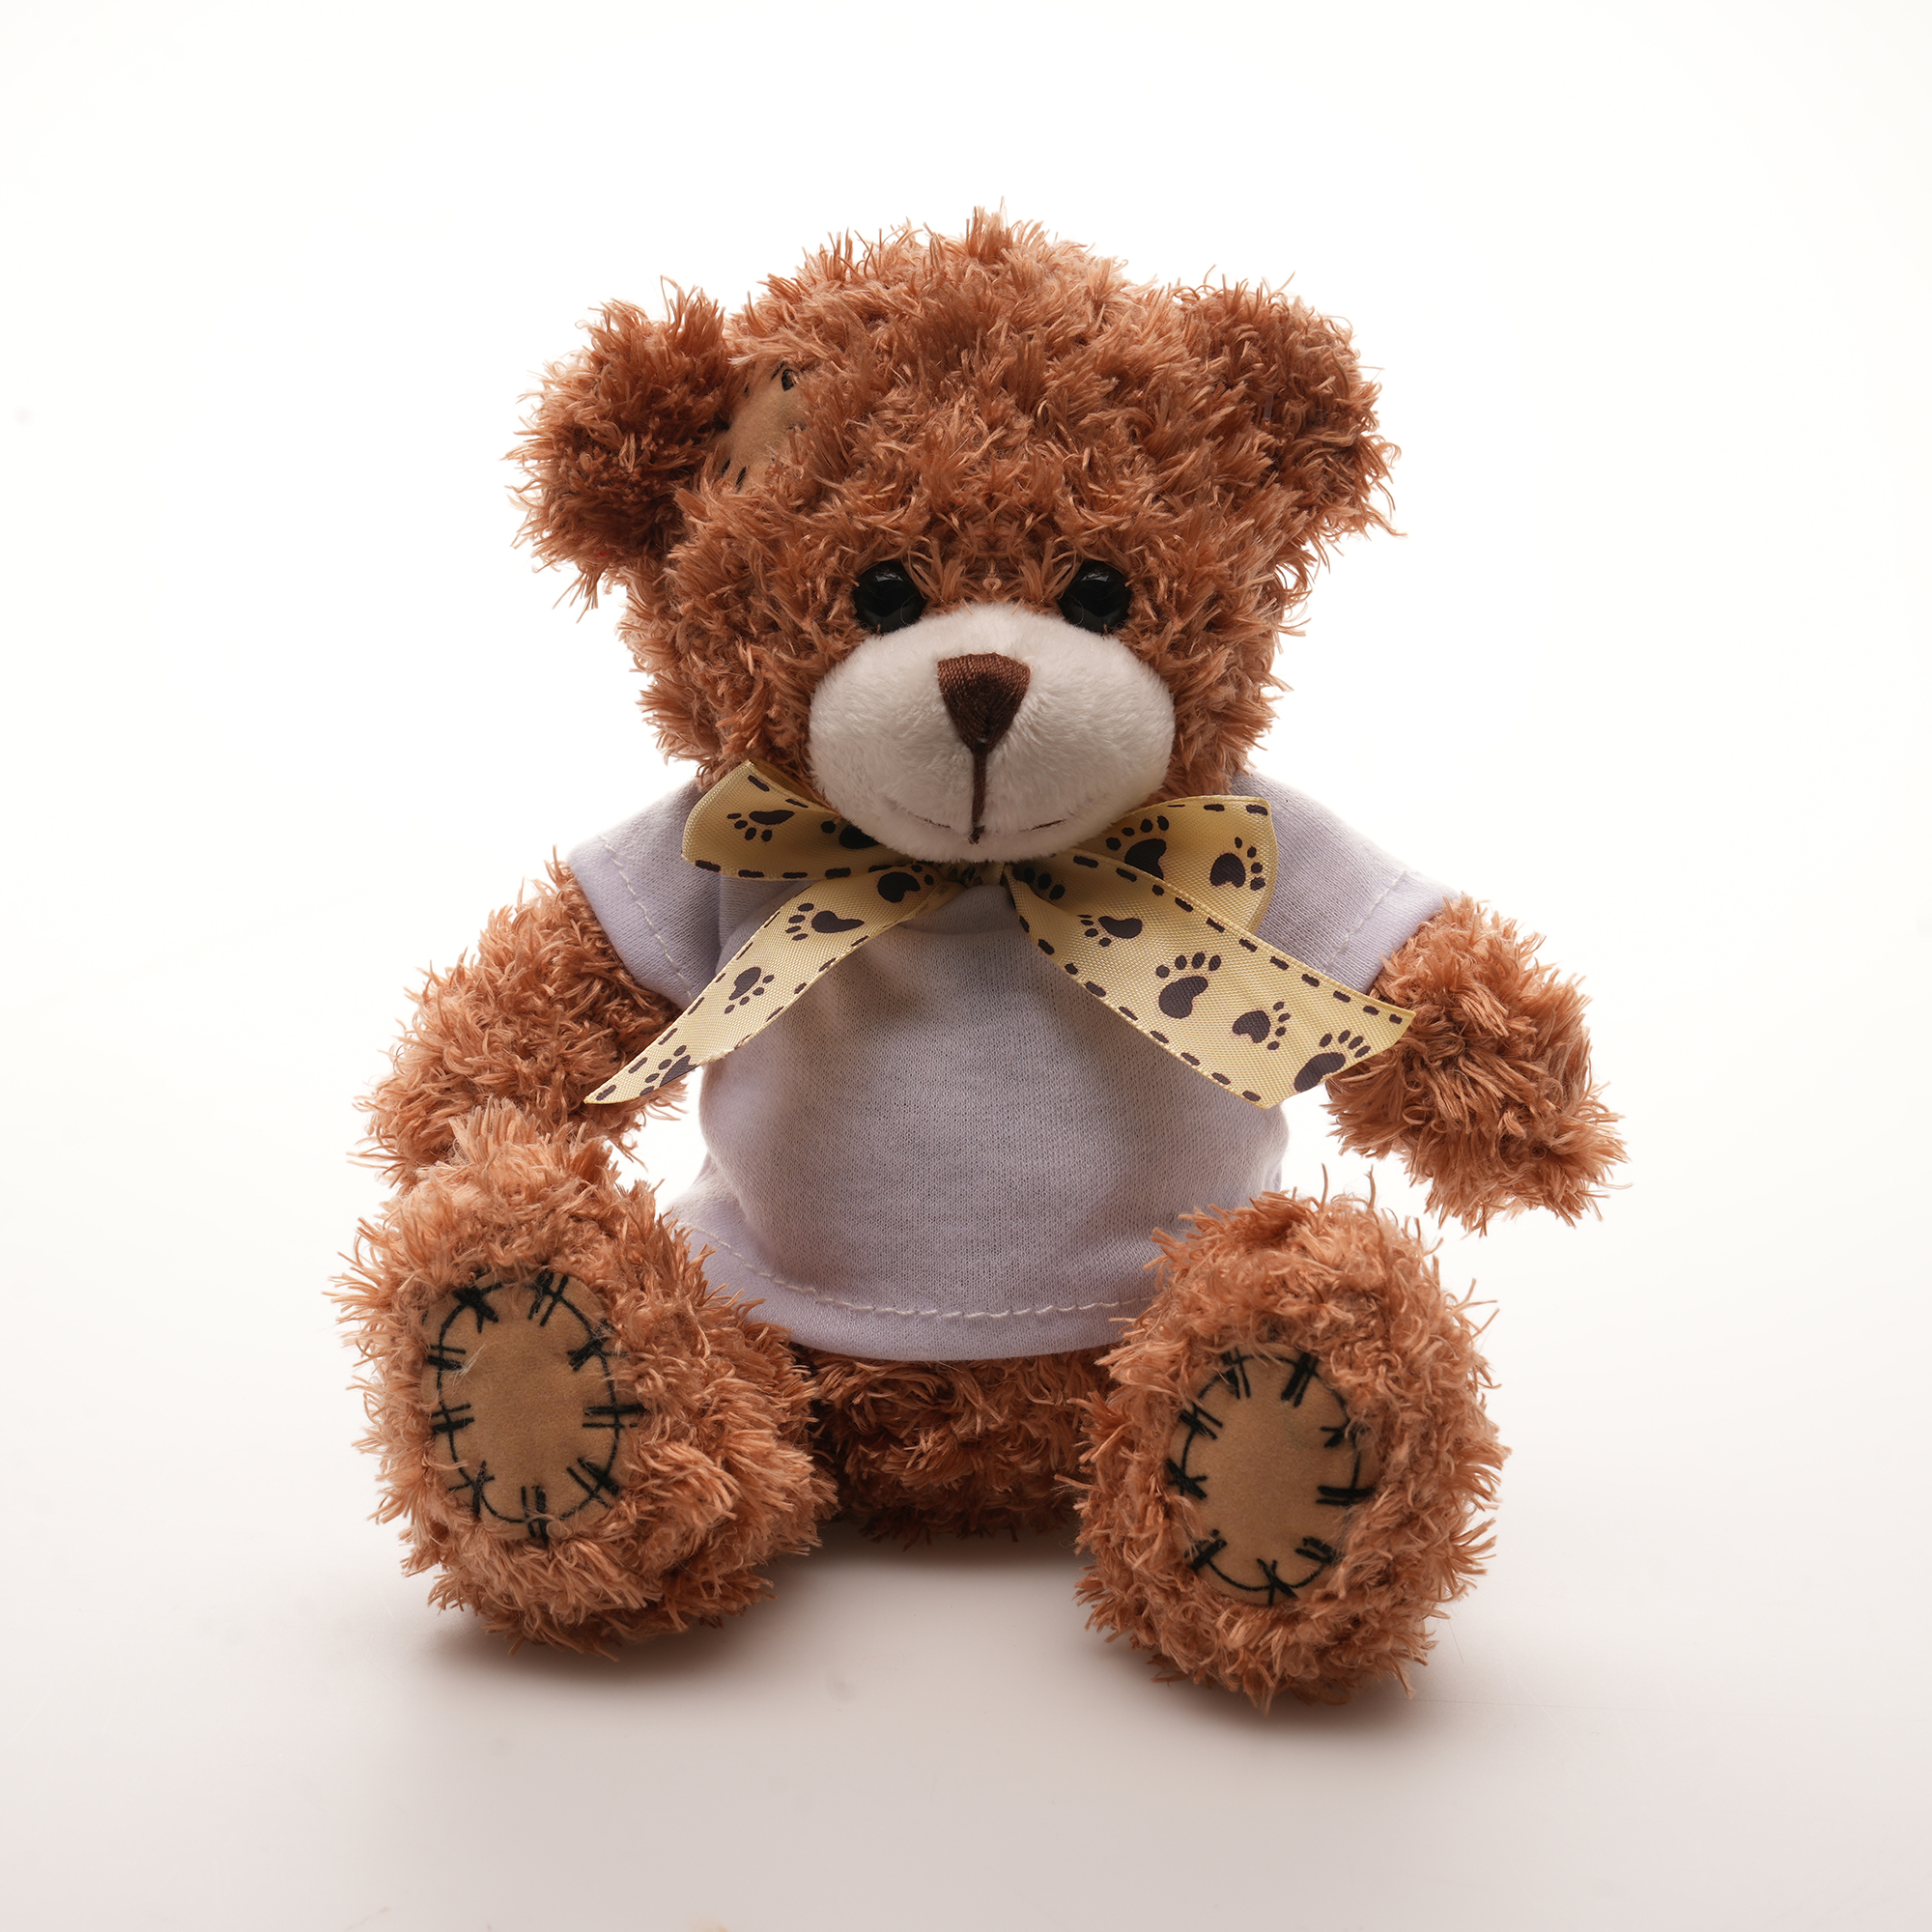 TB0003 2 - Shaggy 12cm Teddy Bear